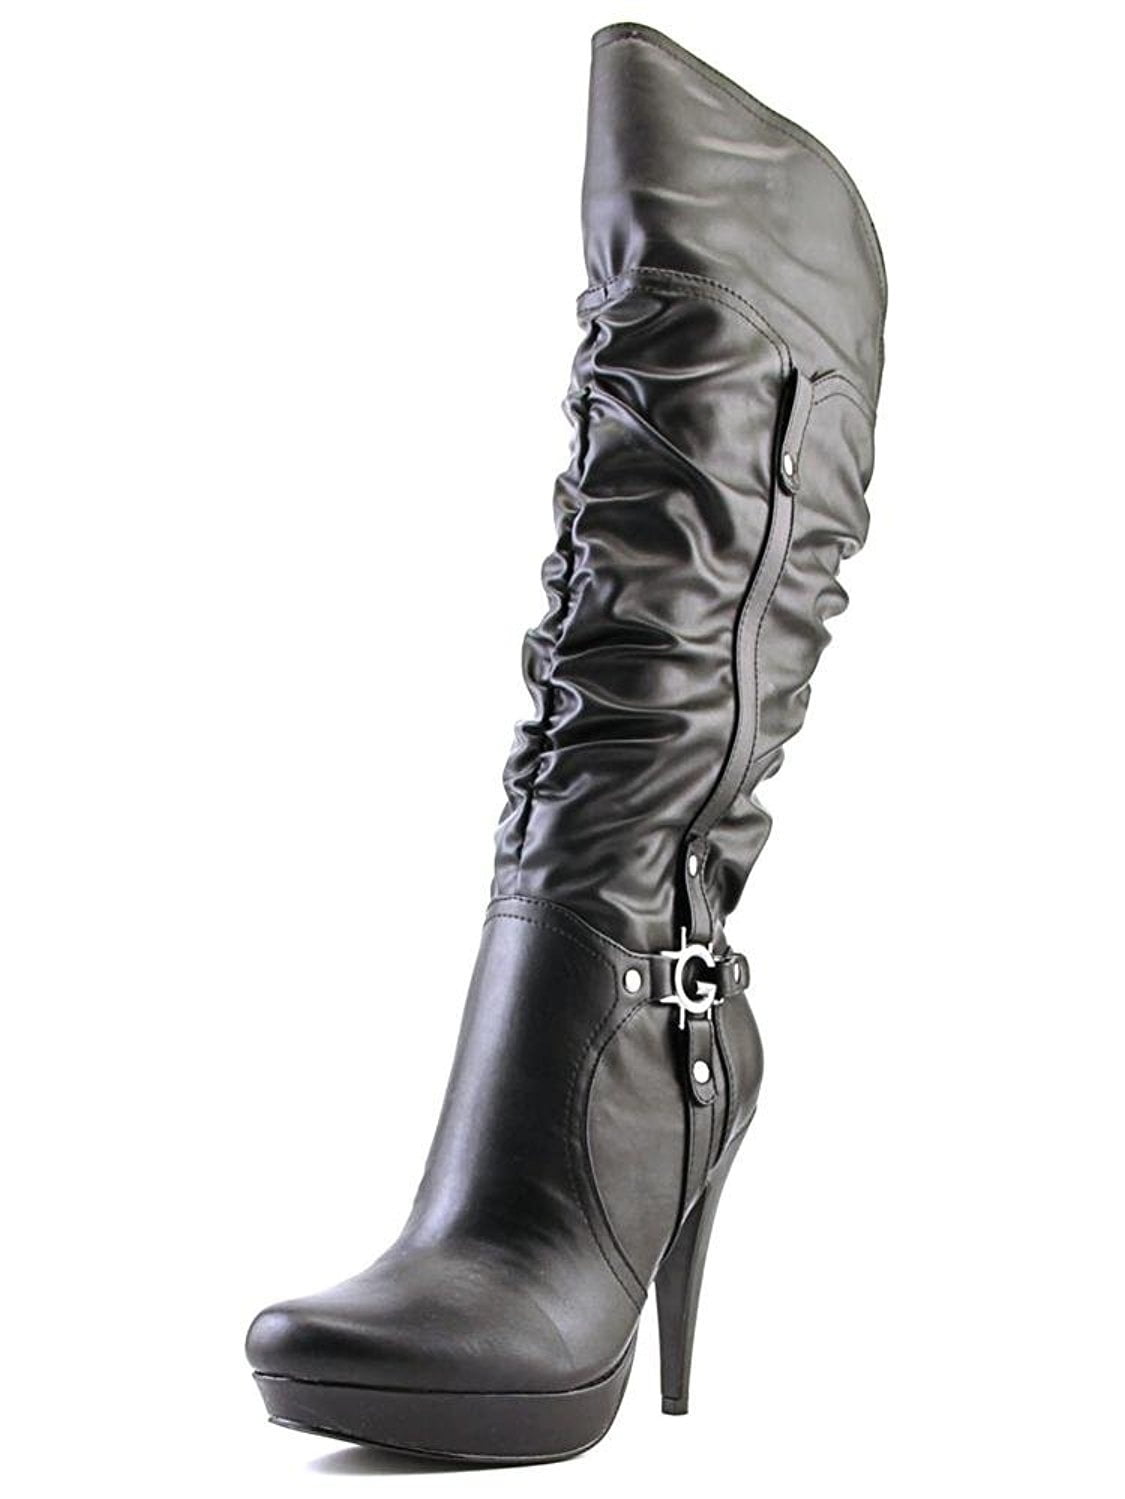 Darrlin High Heel Dress Boots - Walmart 